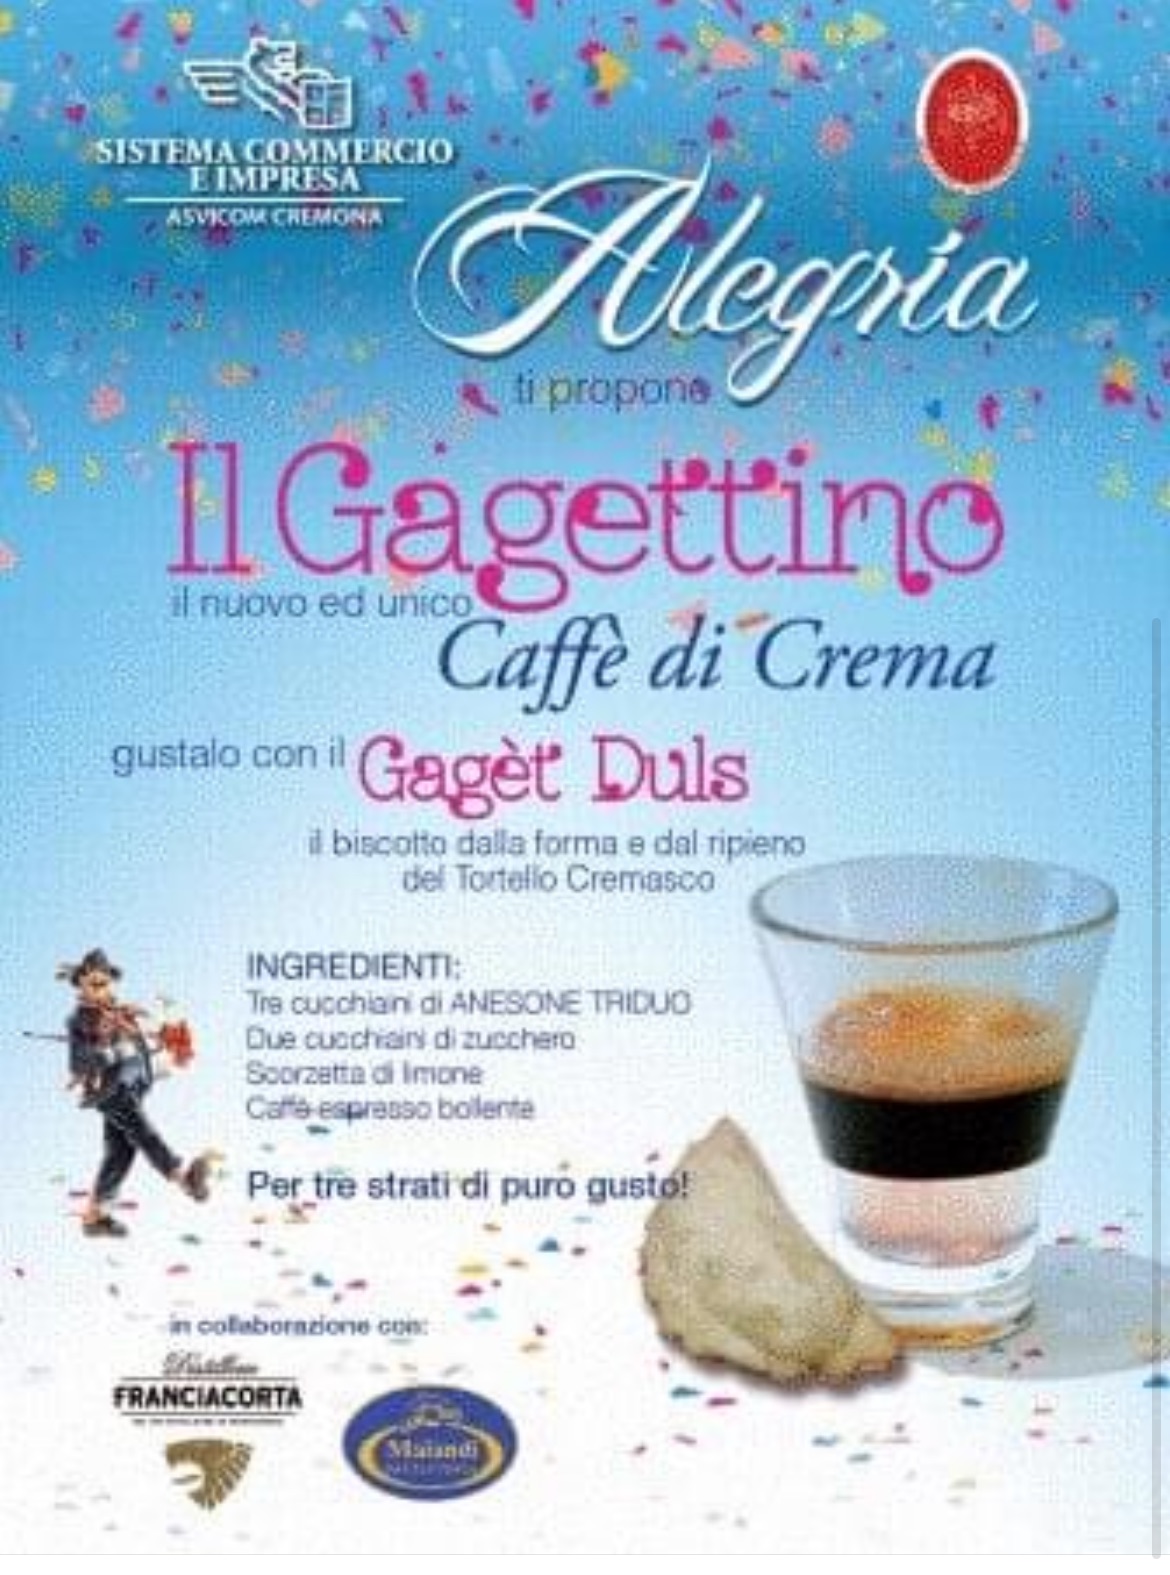 Il “Gagèt Duls” e il “Gagettino”: caffè e dolce ispirati al Tortello Cremasco, beh, meriterebbero di essere ricordati, no? 